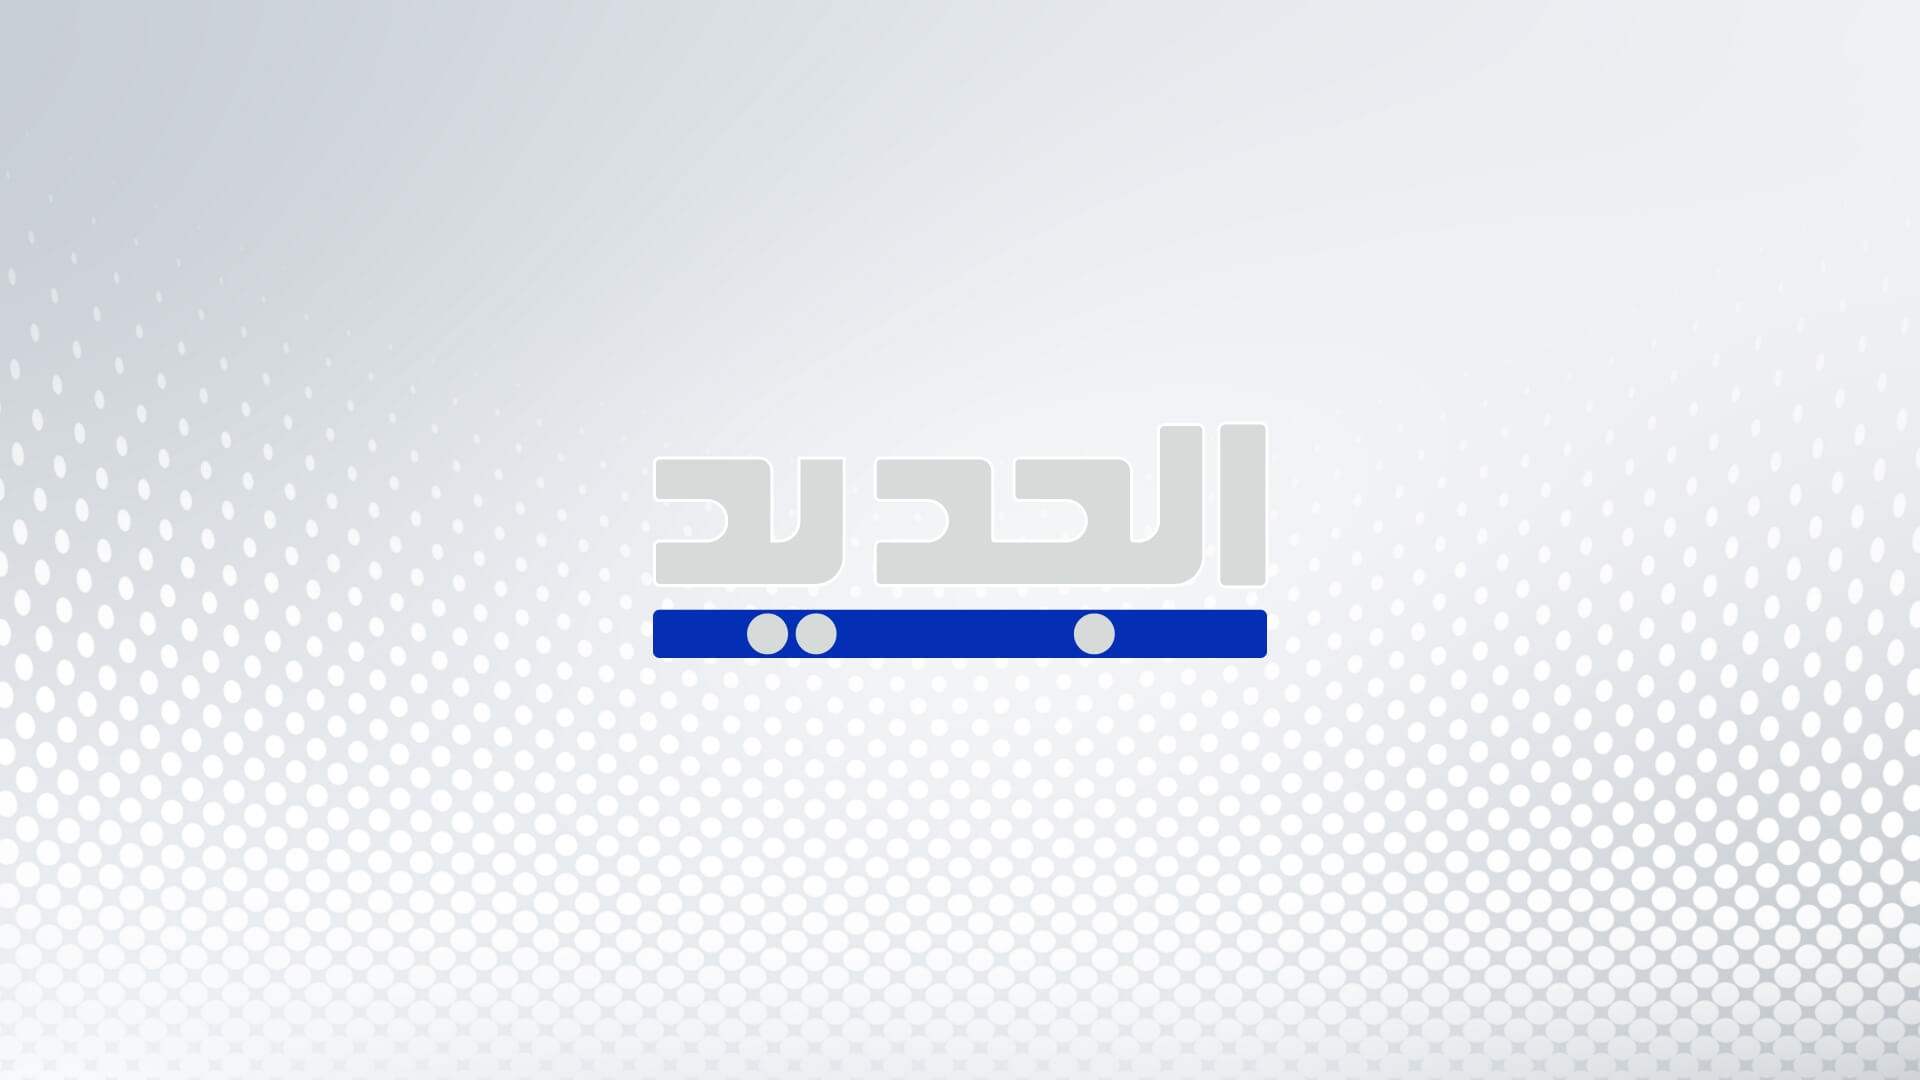 القناة 13 الإسرائيلية: نقل وزير الأمن القومي إيتمار بن غفير للمستشفى إثر إصابته بحادث سير